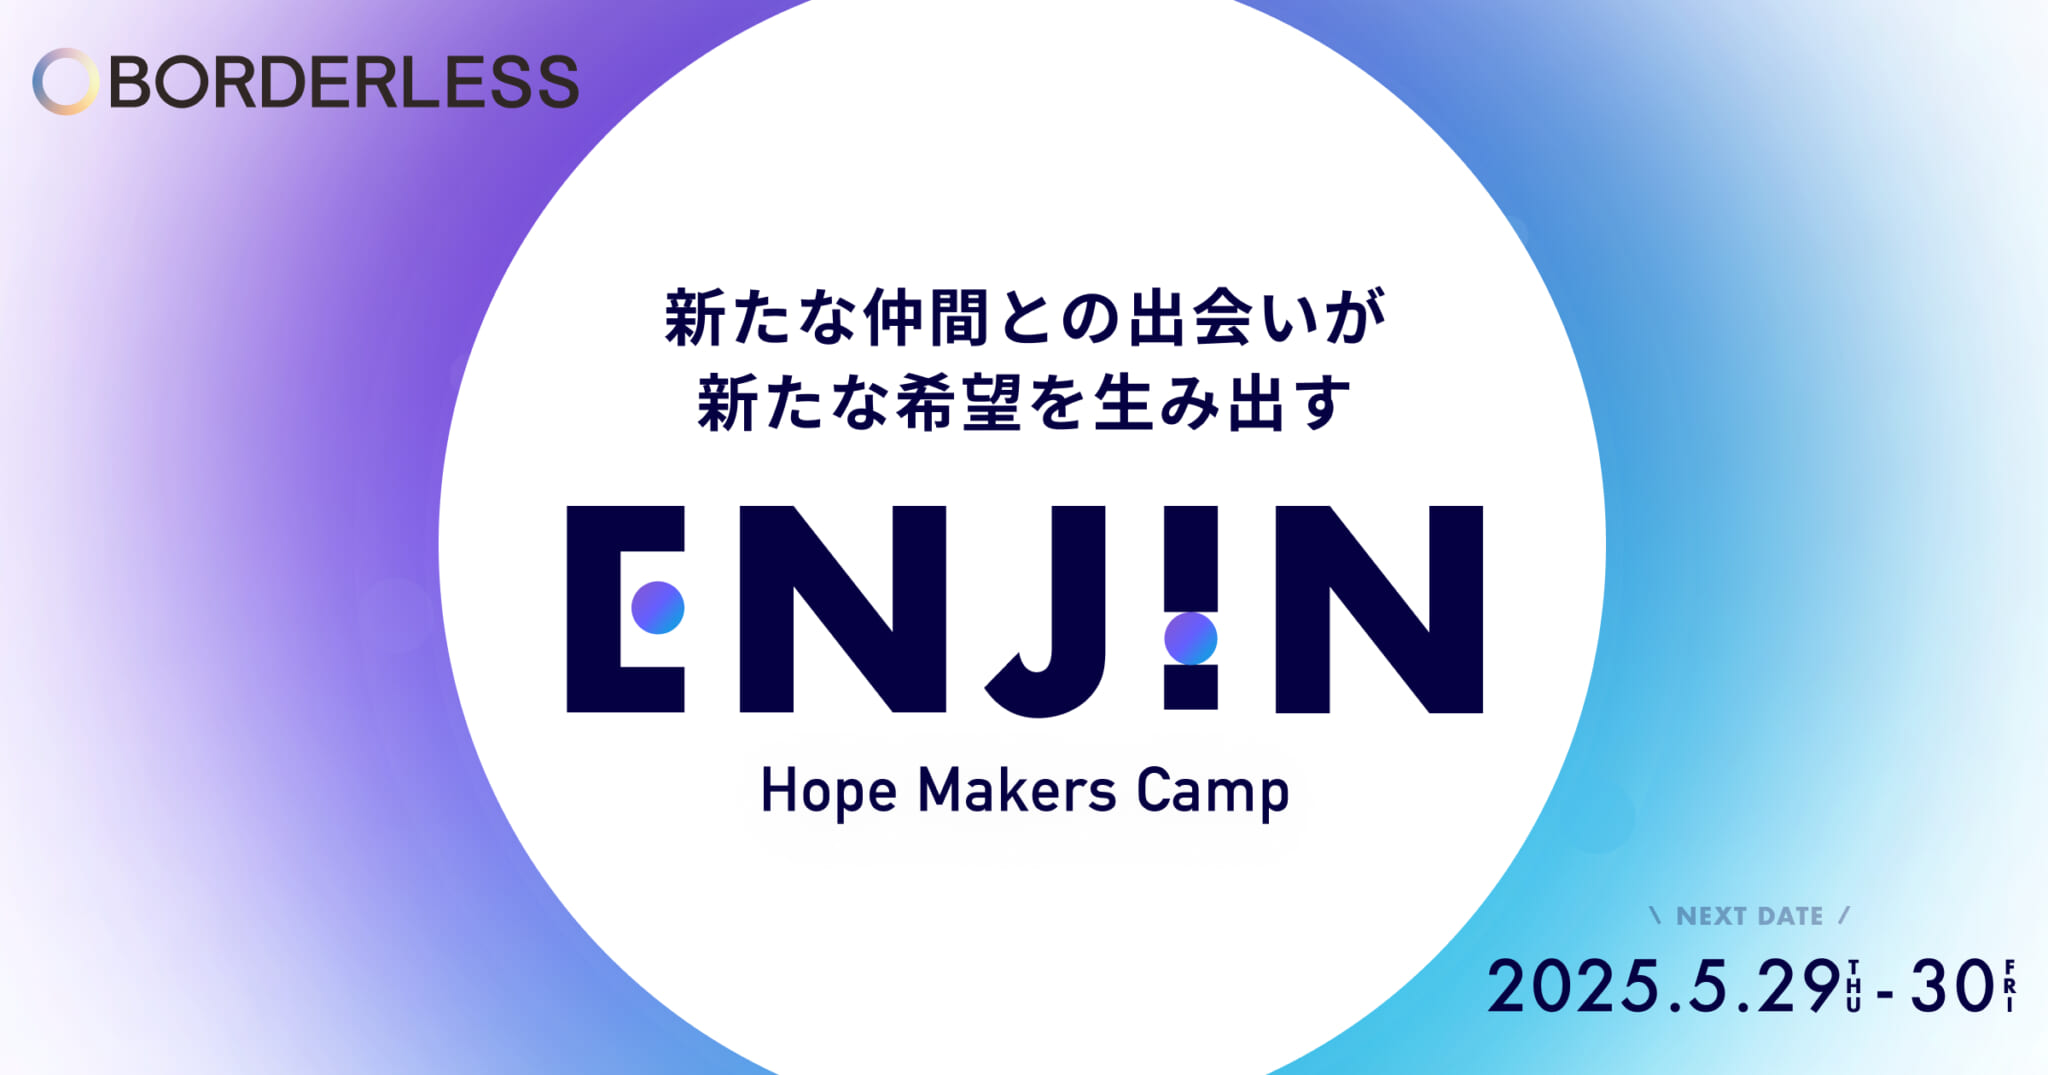 ボーダレス・ジャパン、HOPE MAKERS CAMP「ENJIN」を開催しました